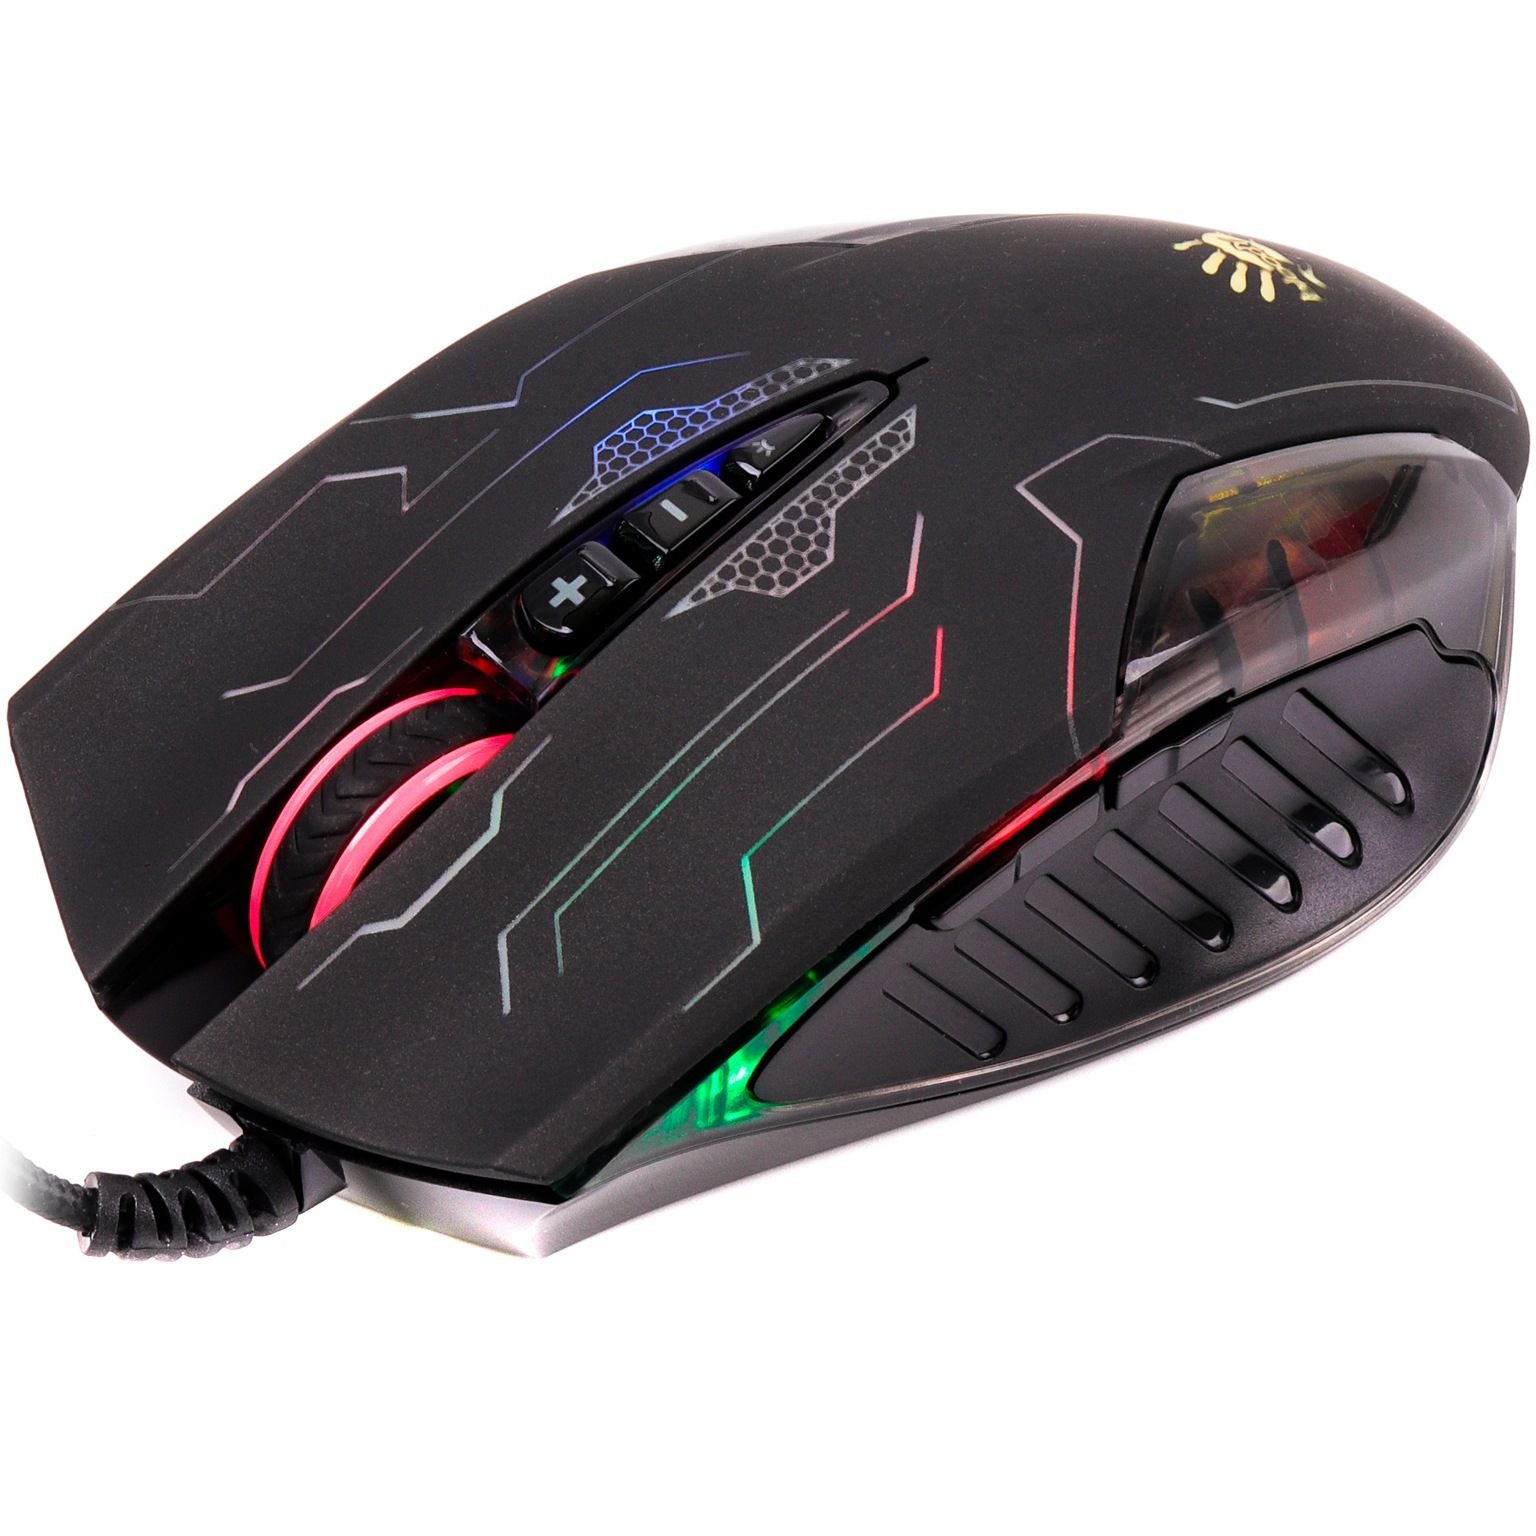 Bloody Q1300 Gaming Mouse & Keyboard Set